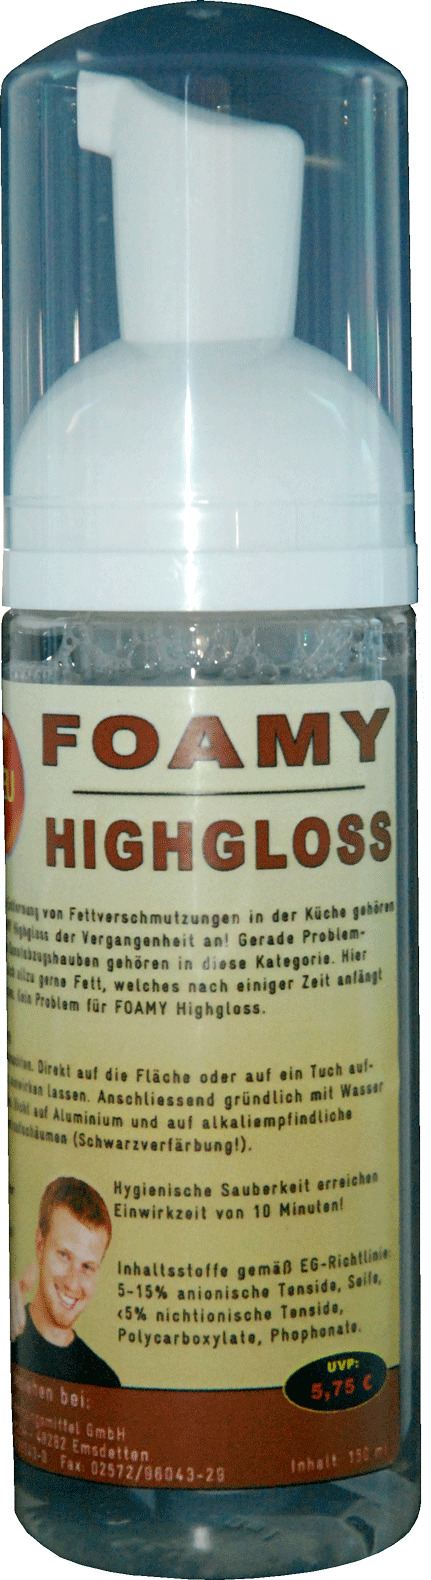 Foamy Highgloss